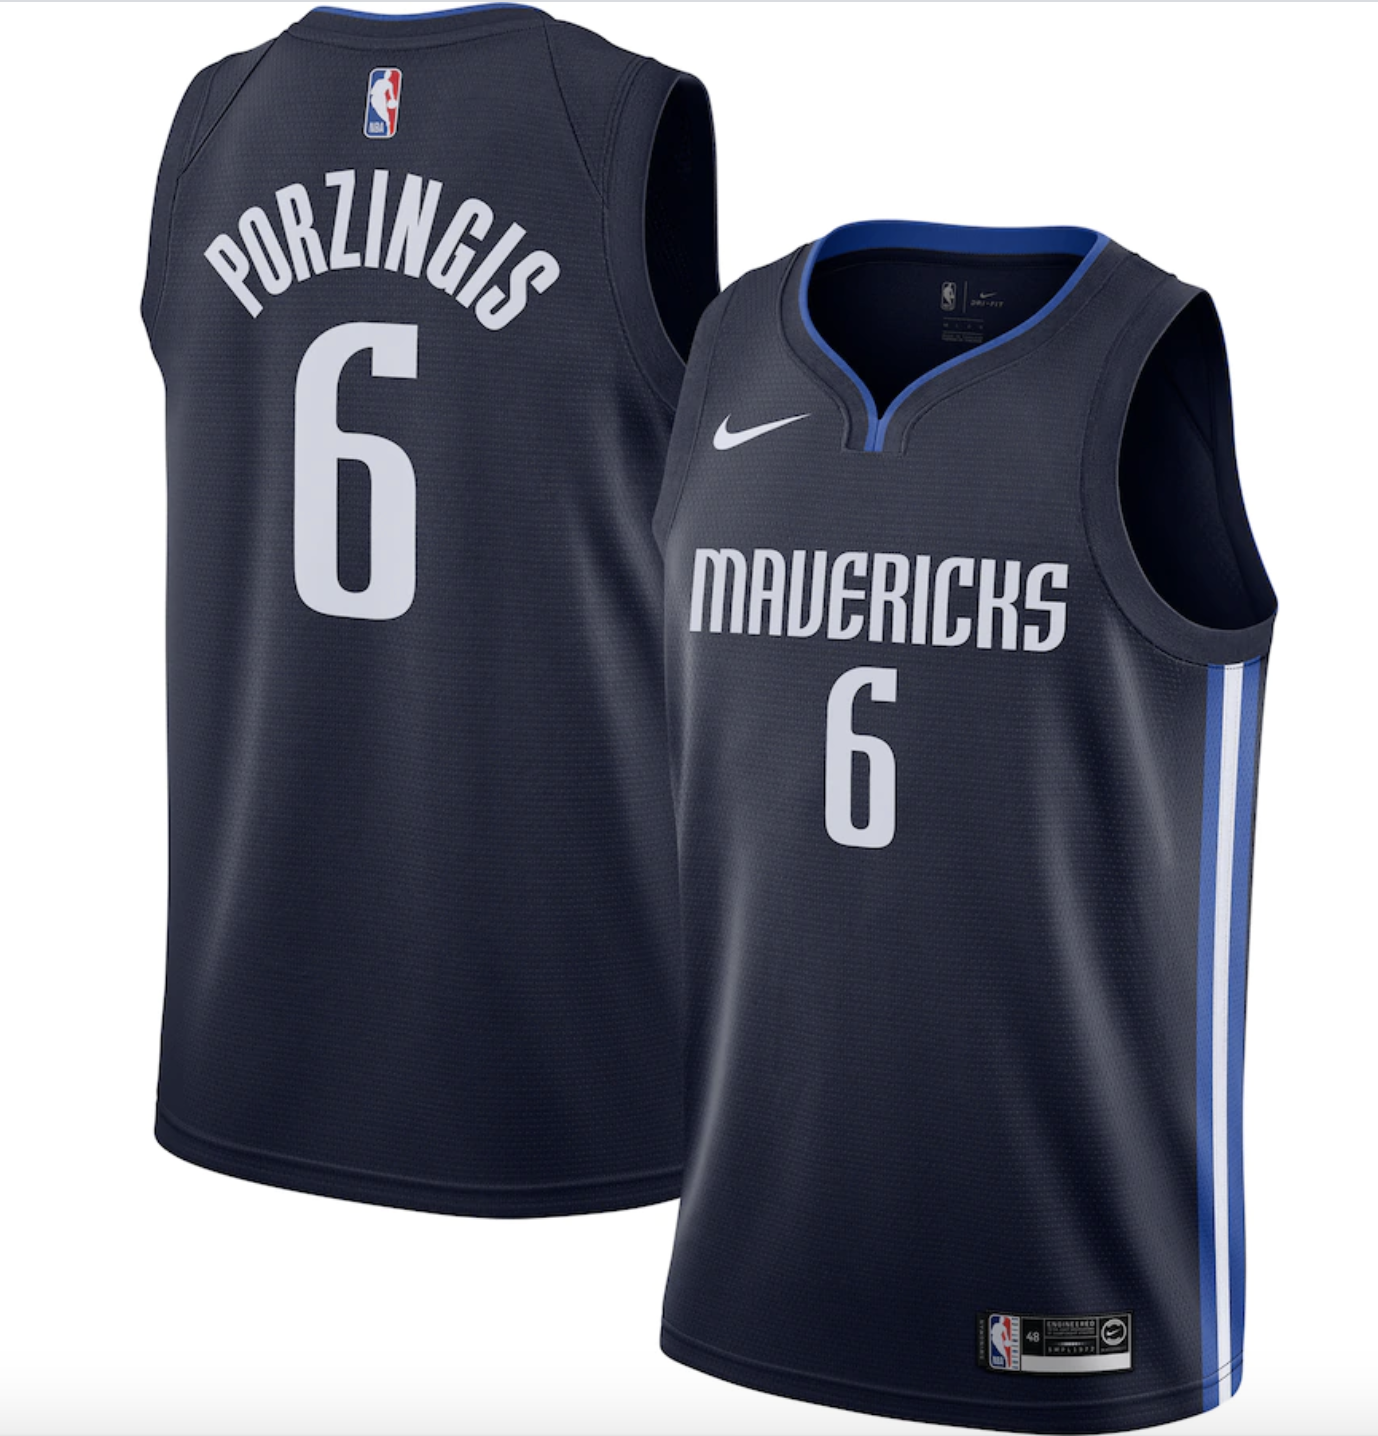 Nike présente le maillot des Mavericks 20192020 “Statement Edition”